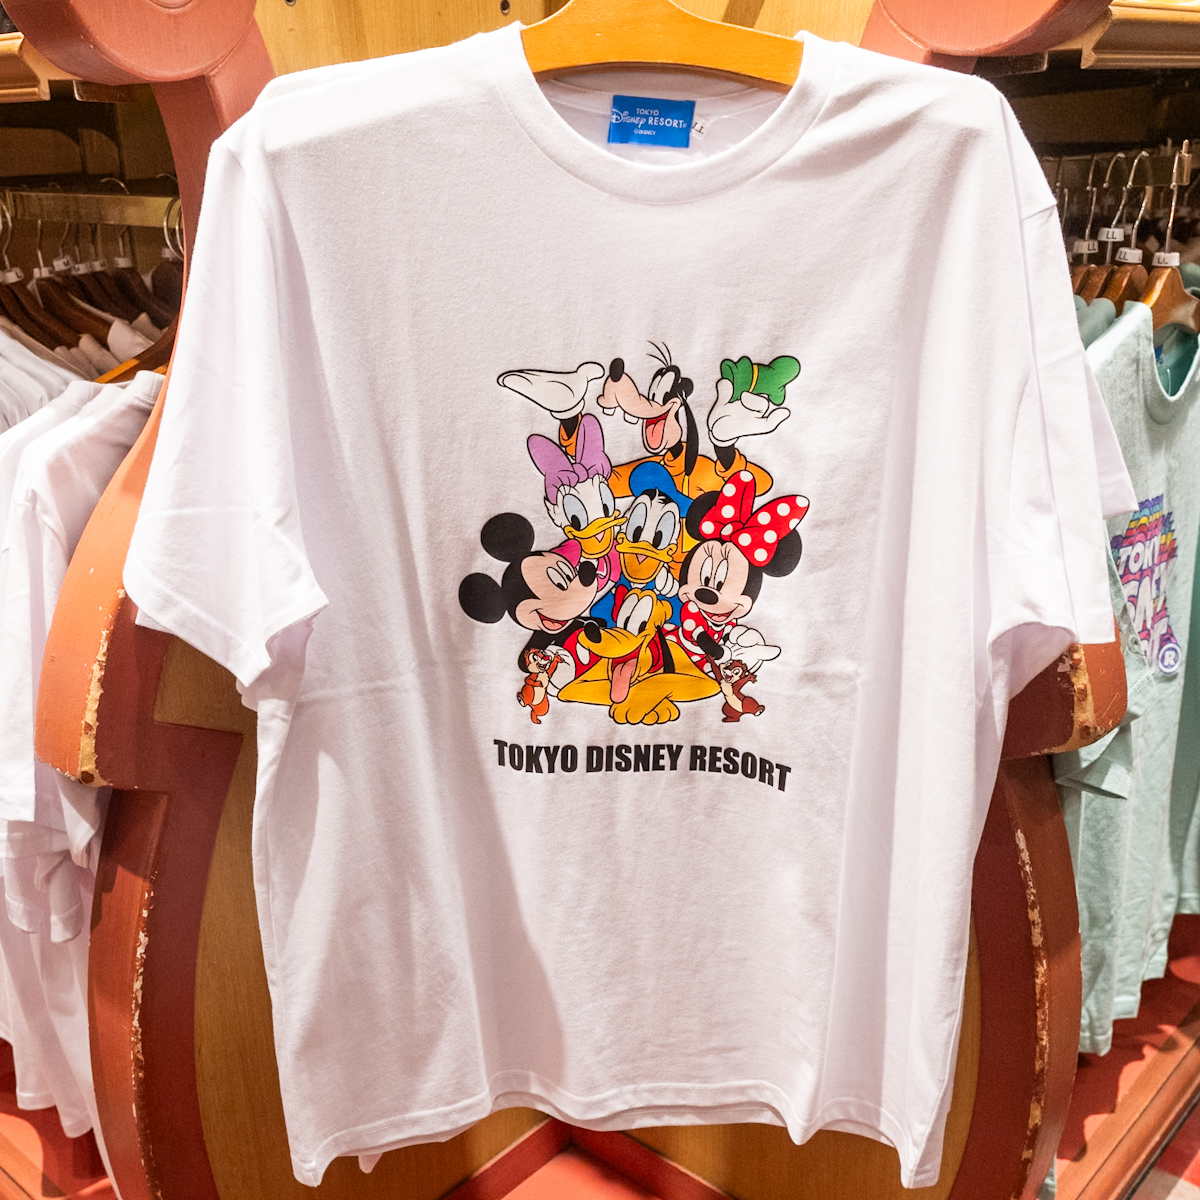 東京ディズニーリゾート「ミッキー&フレンズ」Tシャツ